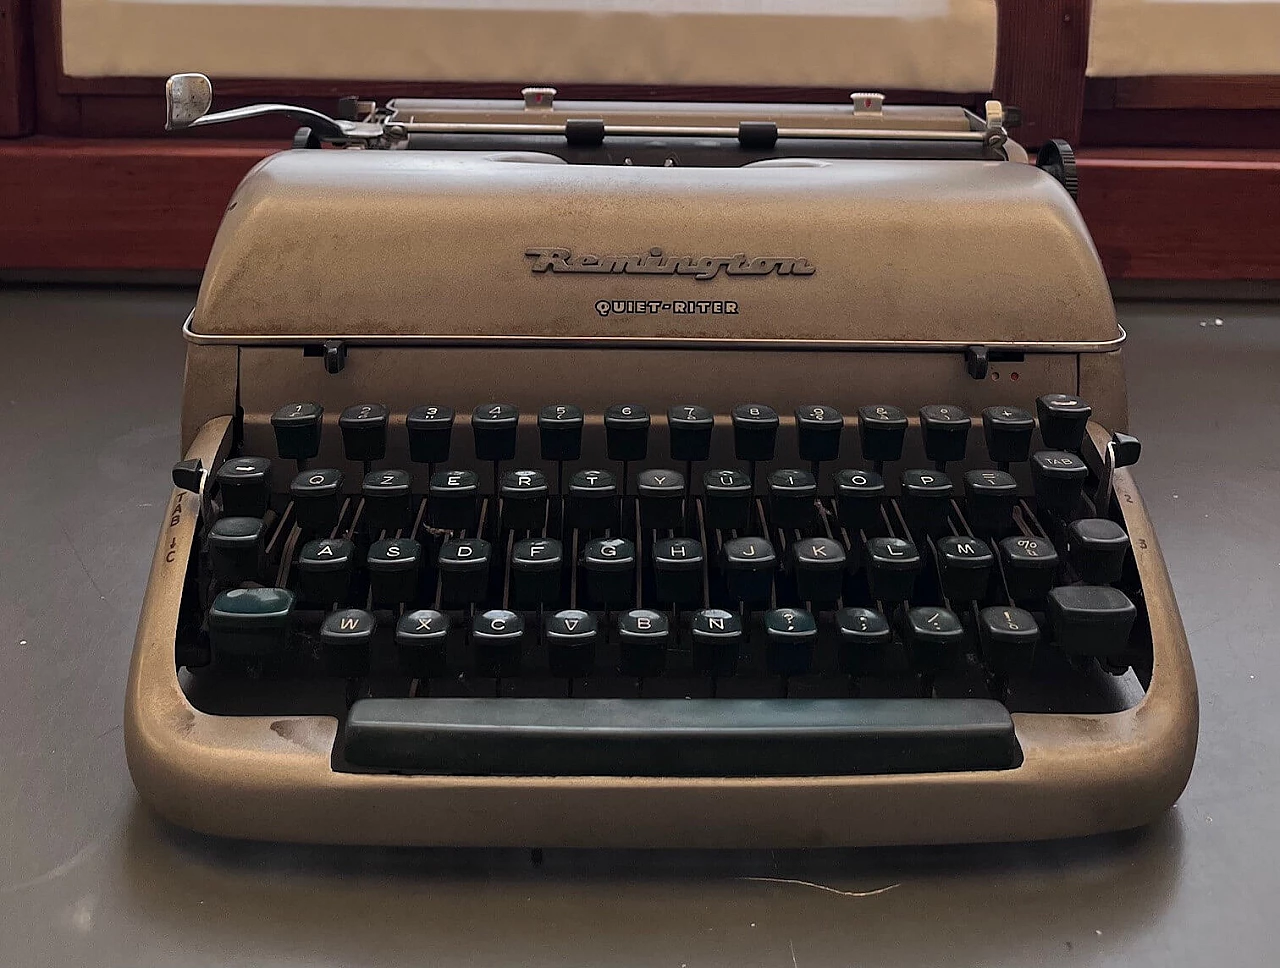 Remington Quiet-Riter typewriter, 1960s 2